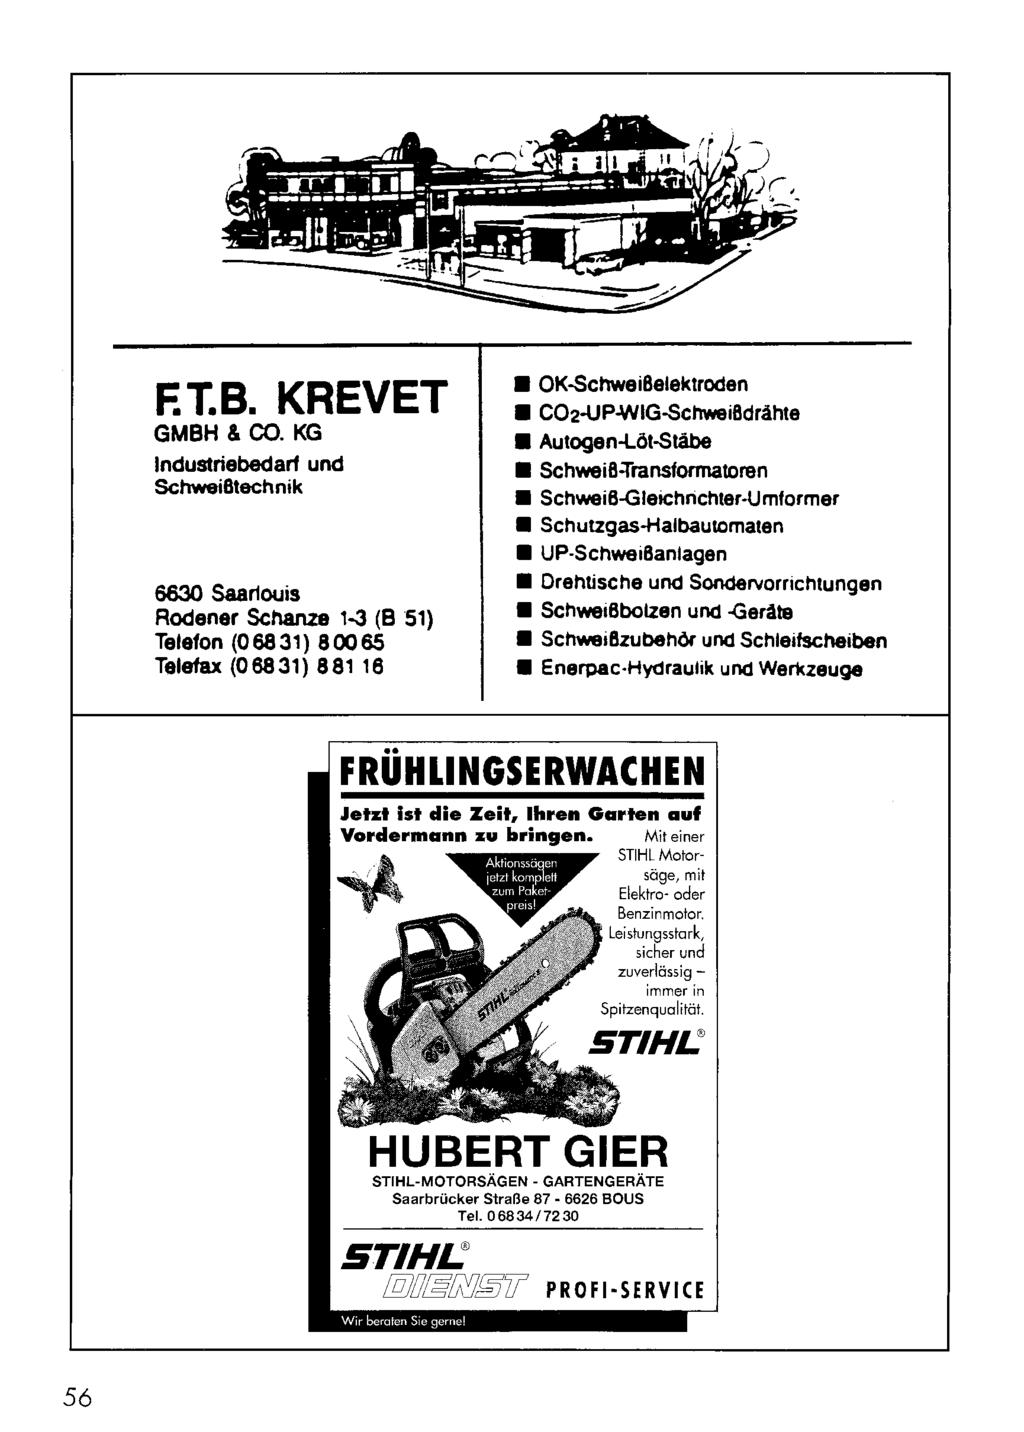 F.T.B. KREVET GMBH & CO. KG Industriebedarf und Schweißtechnik 6630 Saarlouis Aodener Schanze 1-3 (8 51) Telefon (06831) 80065 Telefax (06831) 88116 OK-Schweißelektroden C02.